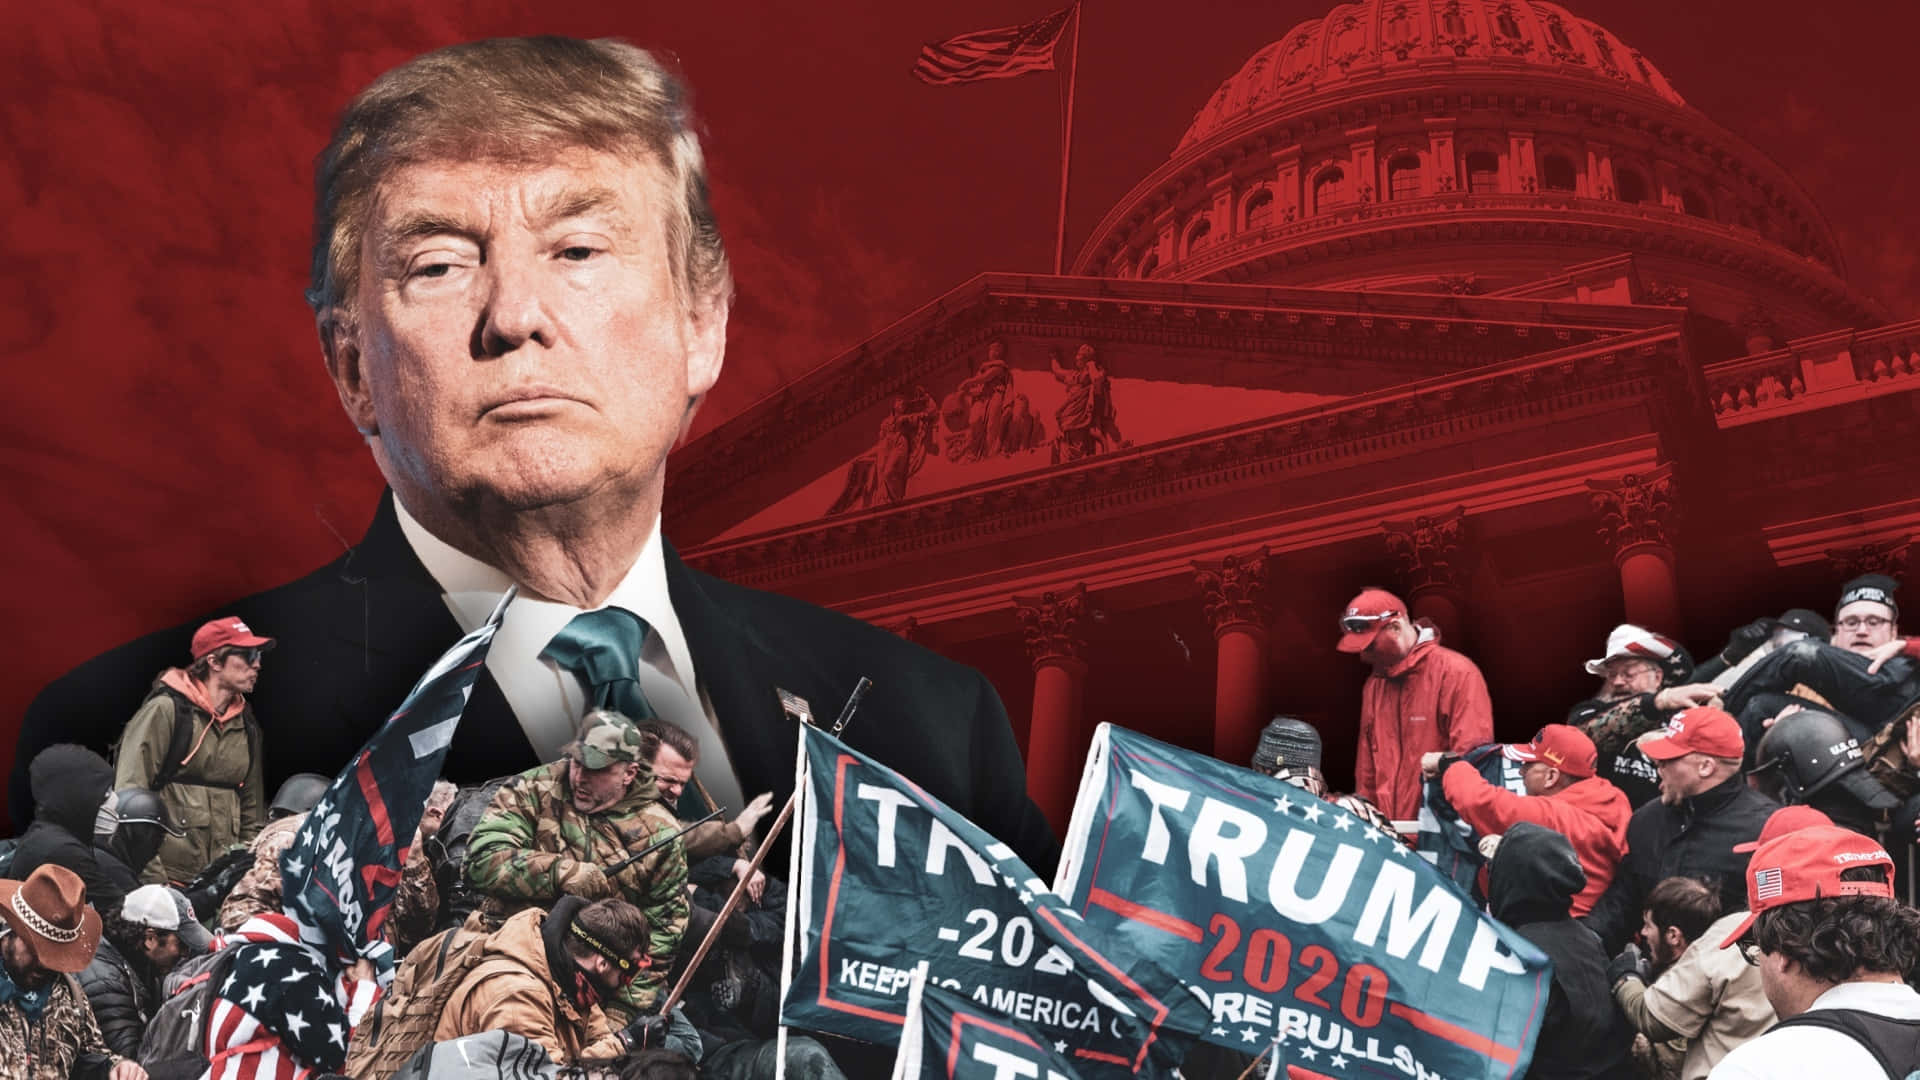 Trump The Republican Wallpaper